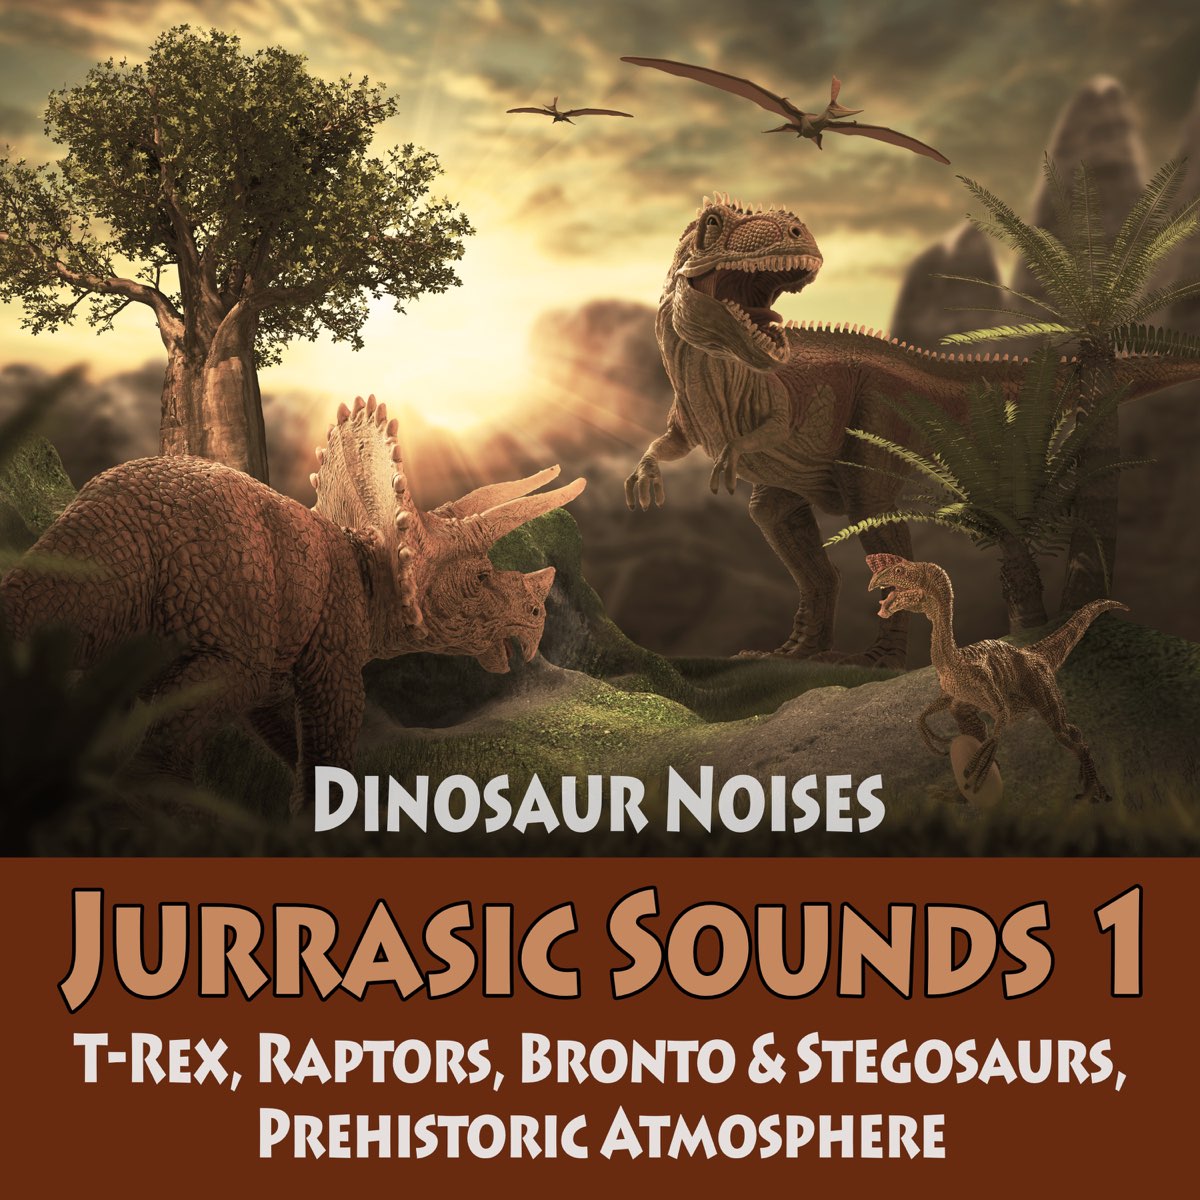 23 Dinosaur Sound Effects Izziepreben